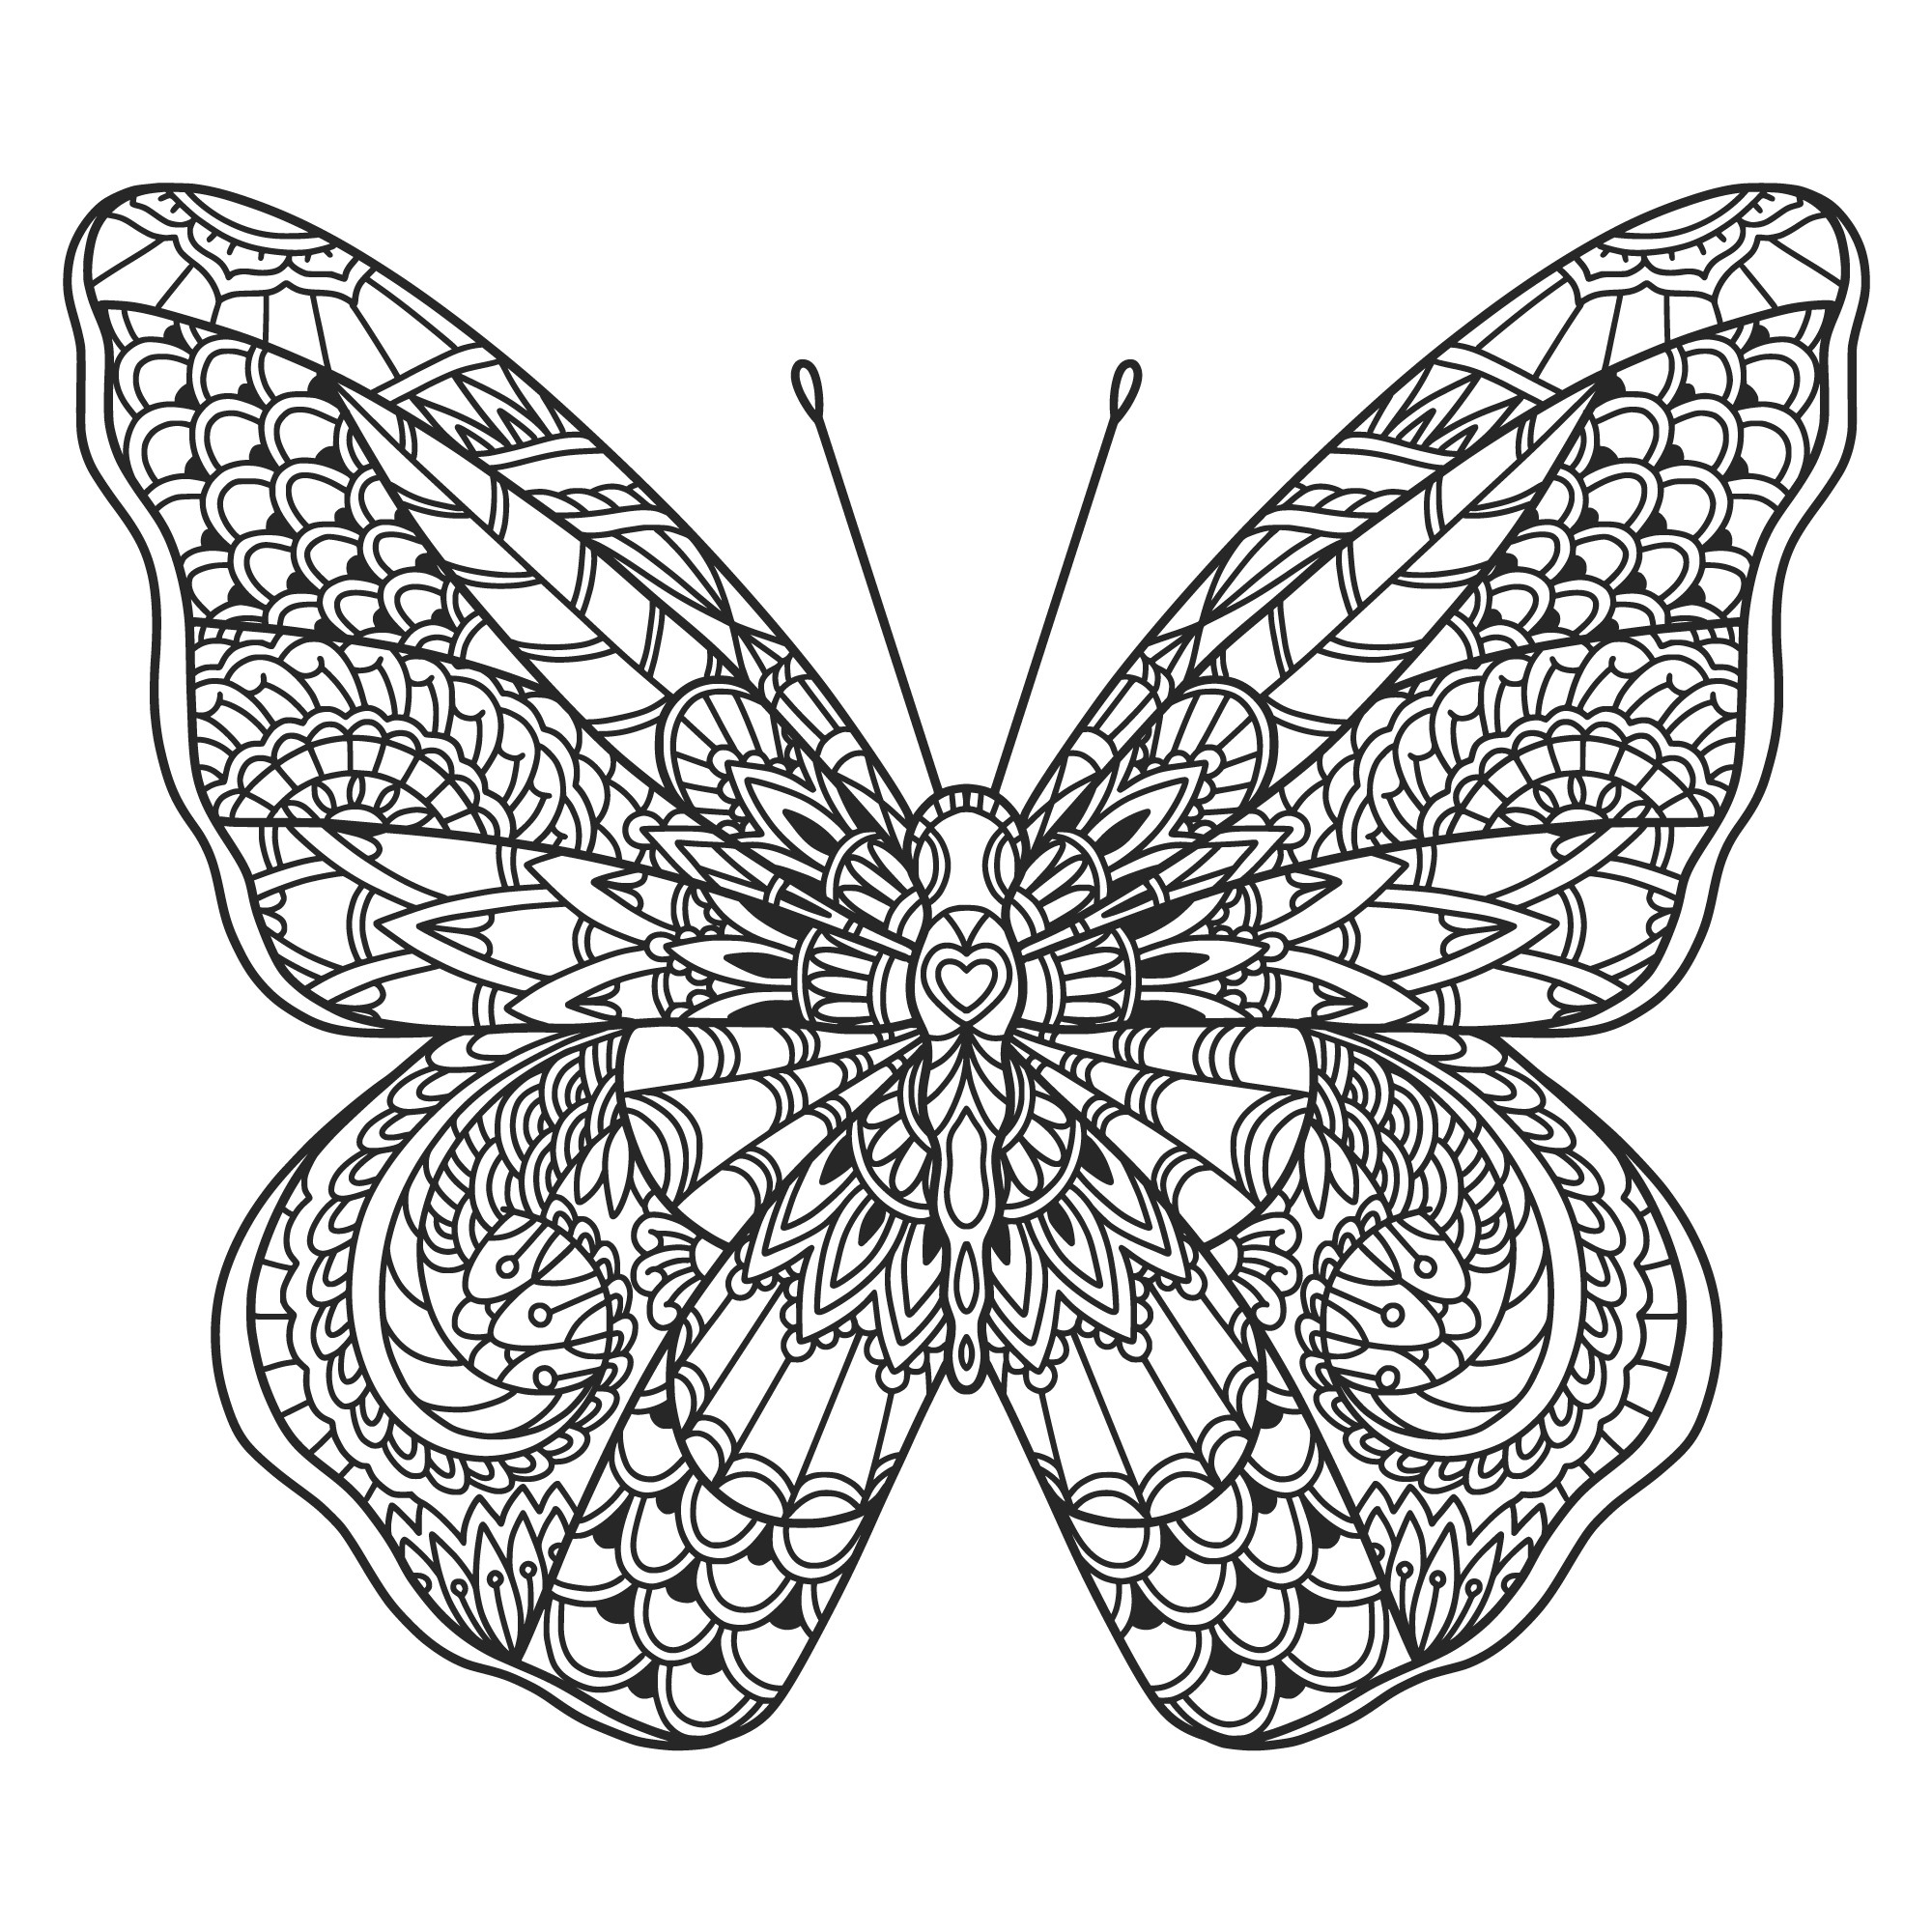 Раскраска для детей: сложная бабочка с ажурными узорами на крыльях